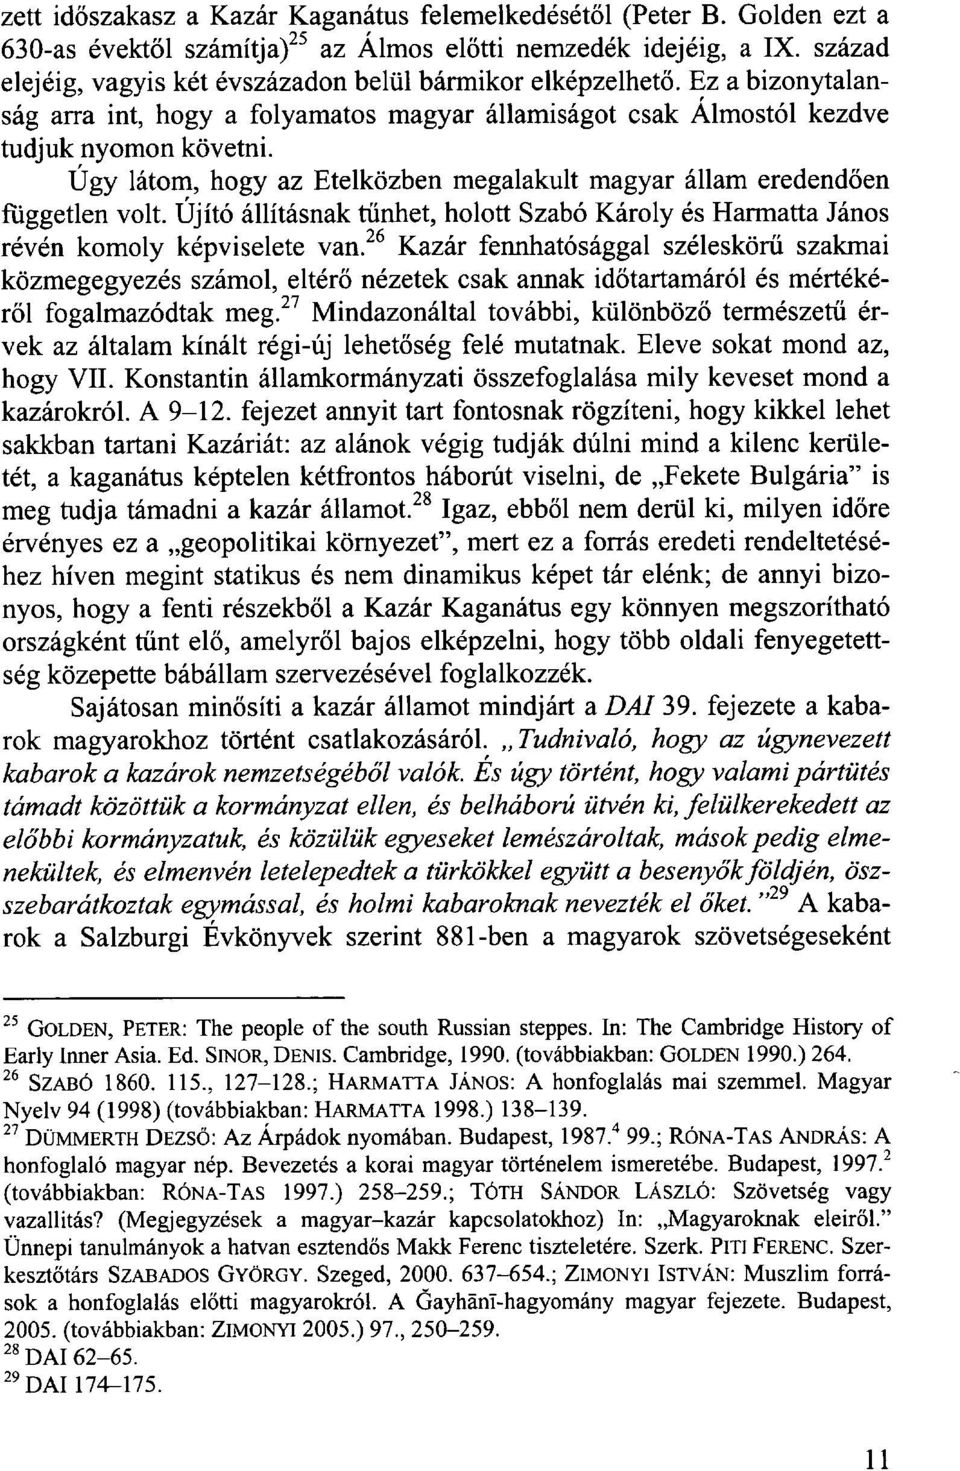 Úgy látom, hogy az Etelközben megalakult magyar állam eredendően független volt. Újító állításnak tűnhet, holott Szabó Károly és Harmatta János révén komoly képviselete van.